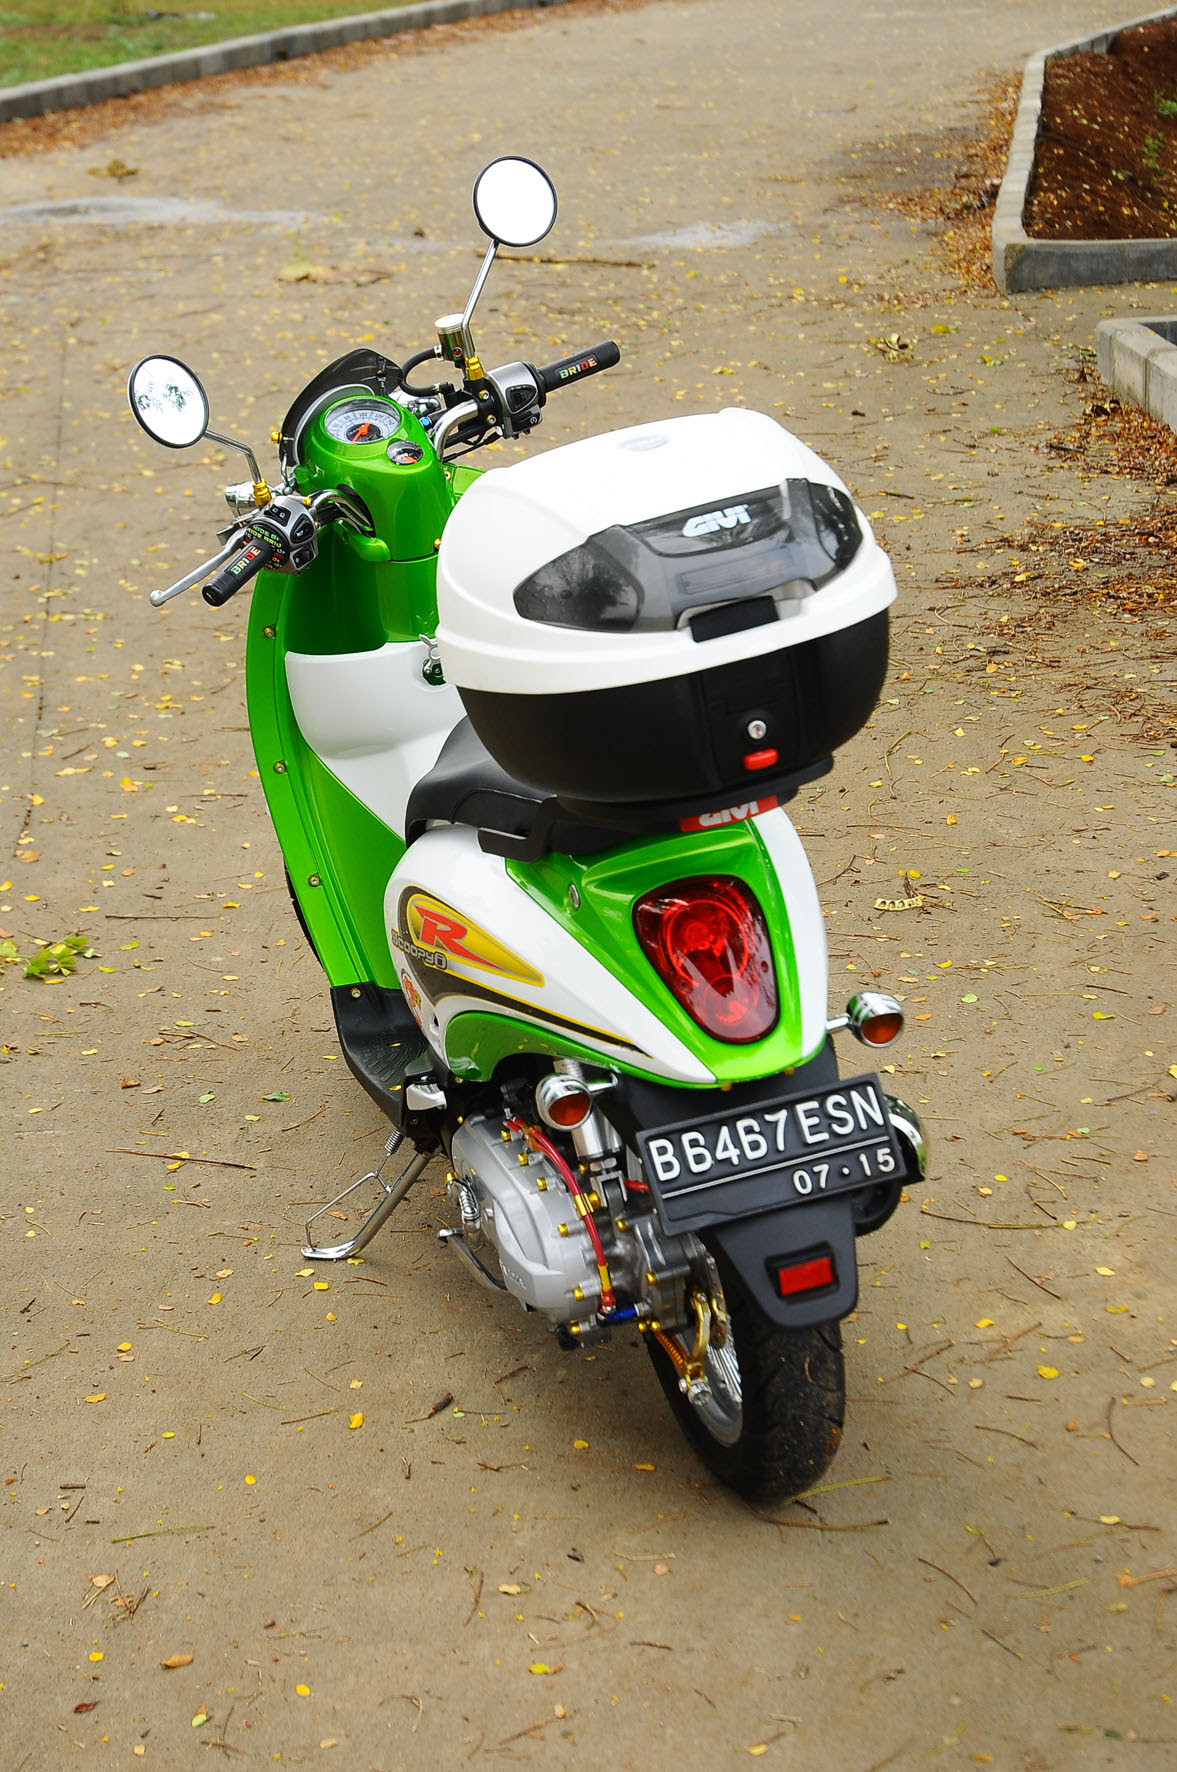 Foto Modifikasi Motor Scoopy Thailand Terkeren Dan Terbaru